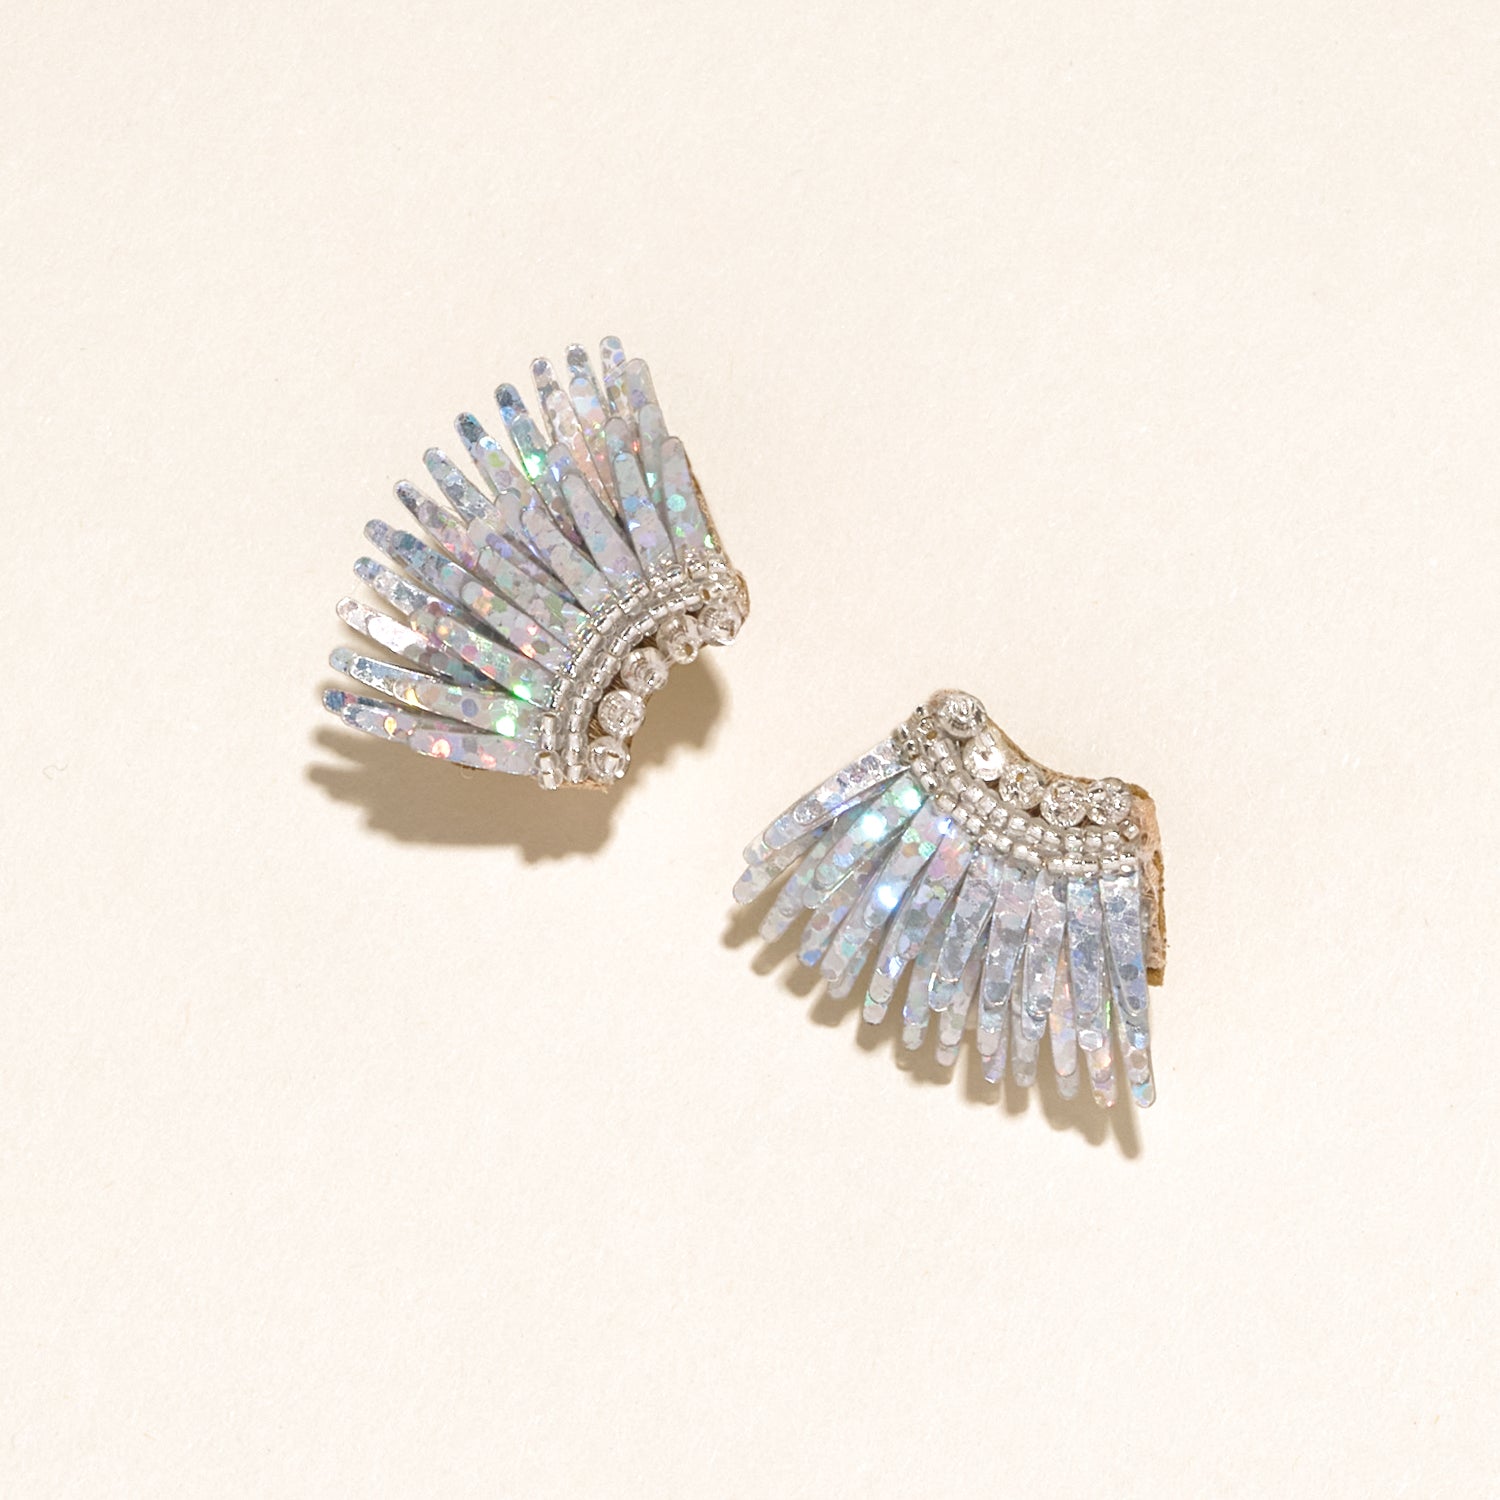 Micro Madeline Earrings Silver Glitter by Mignonne Gavigan